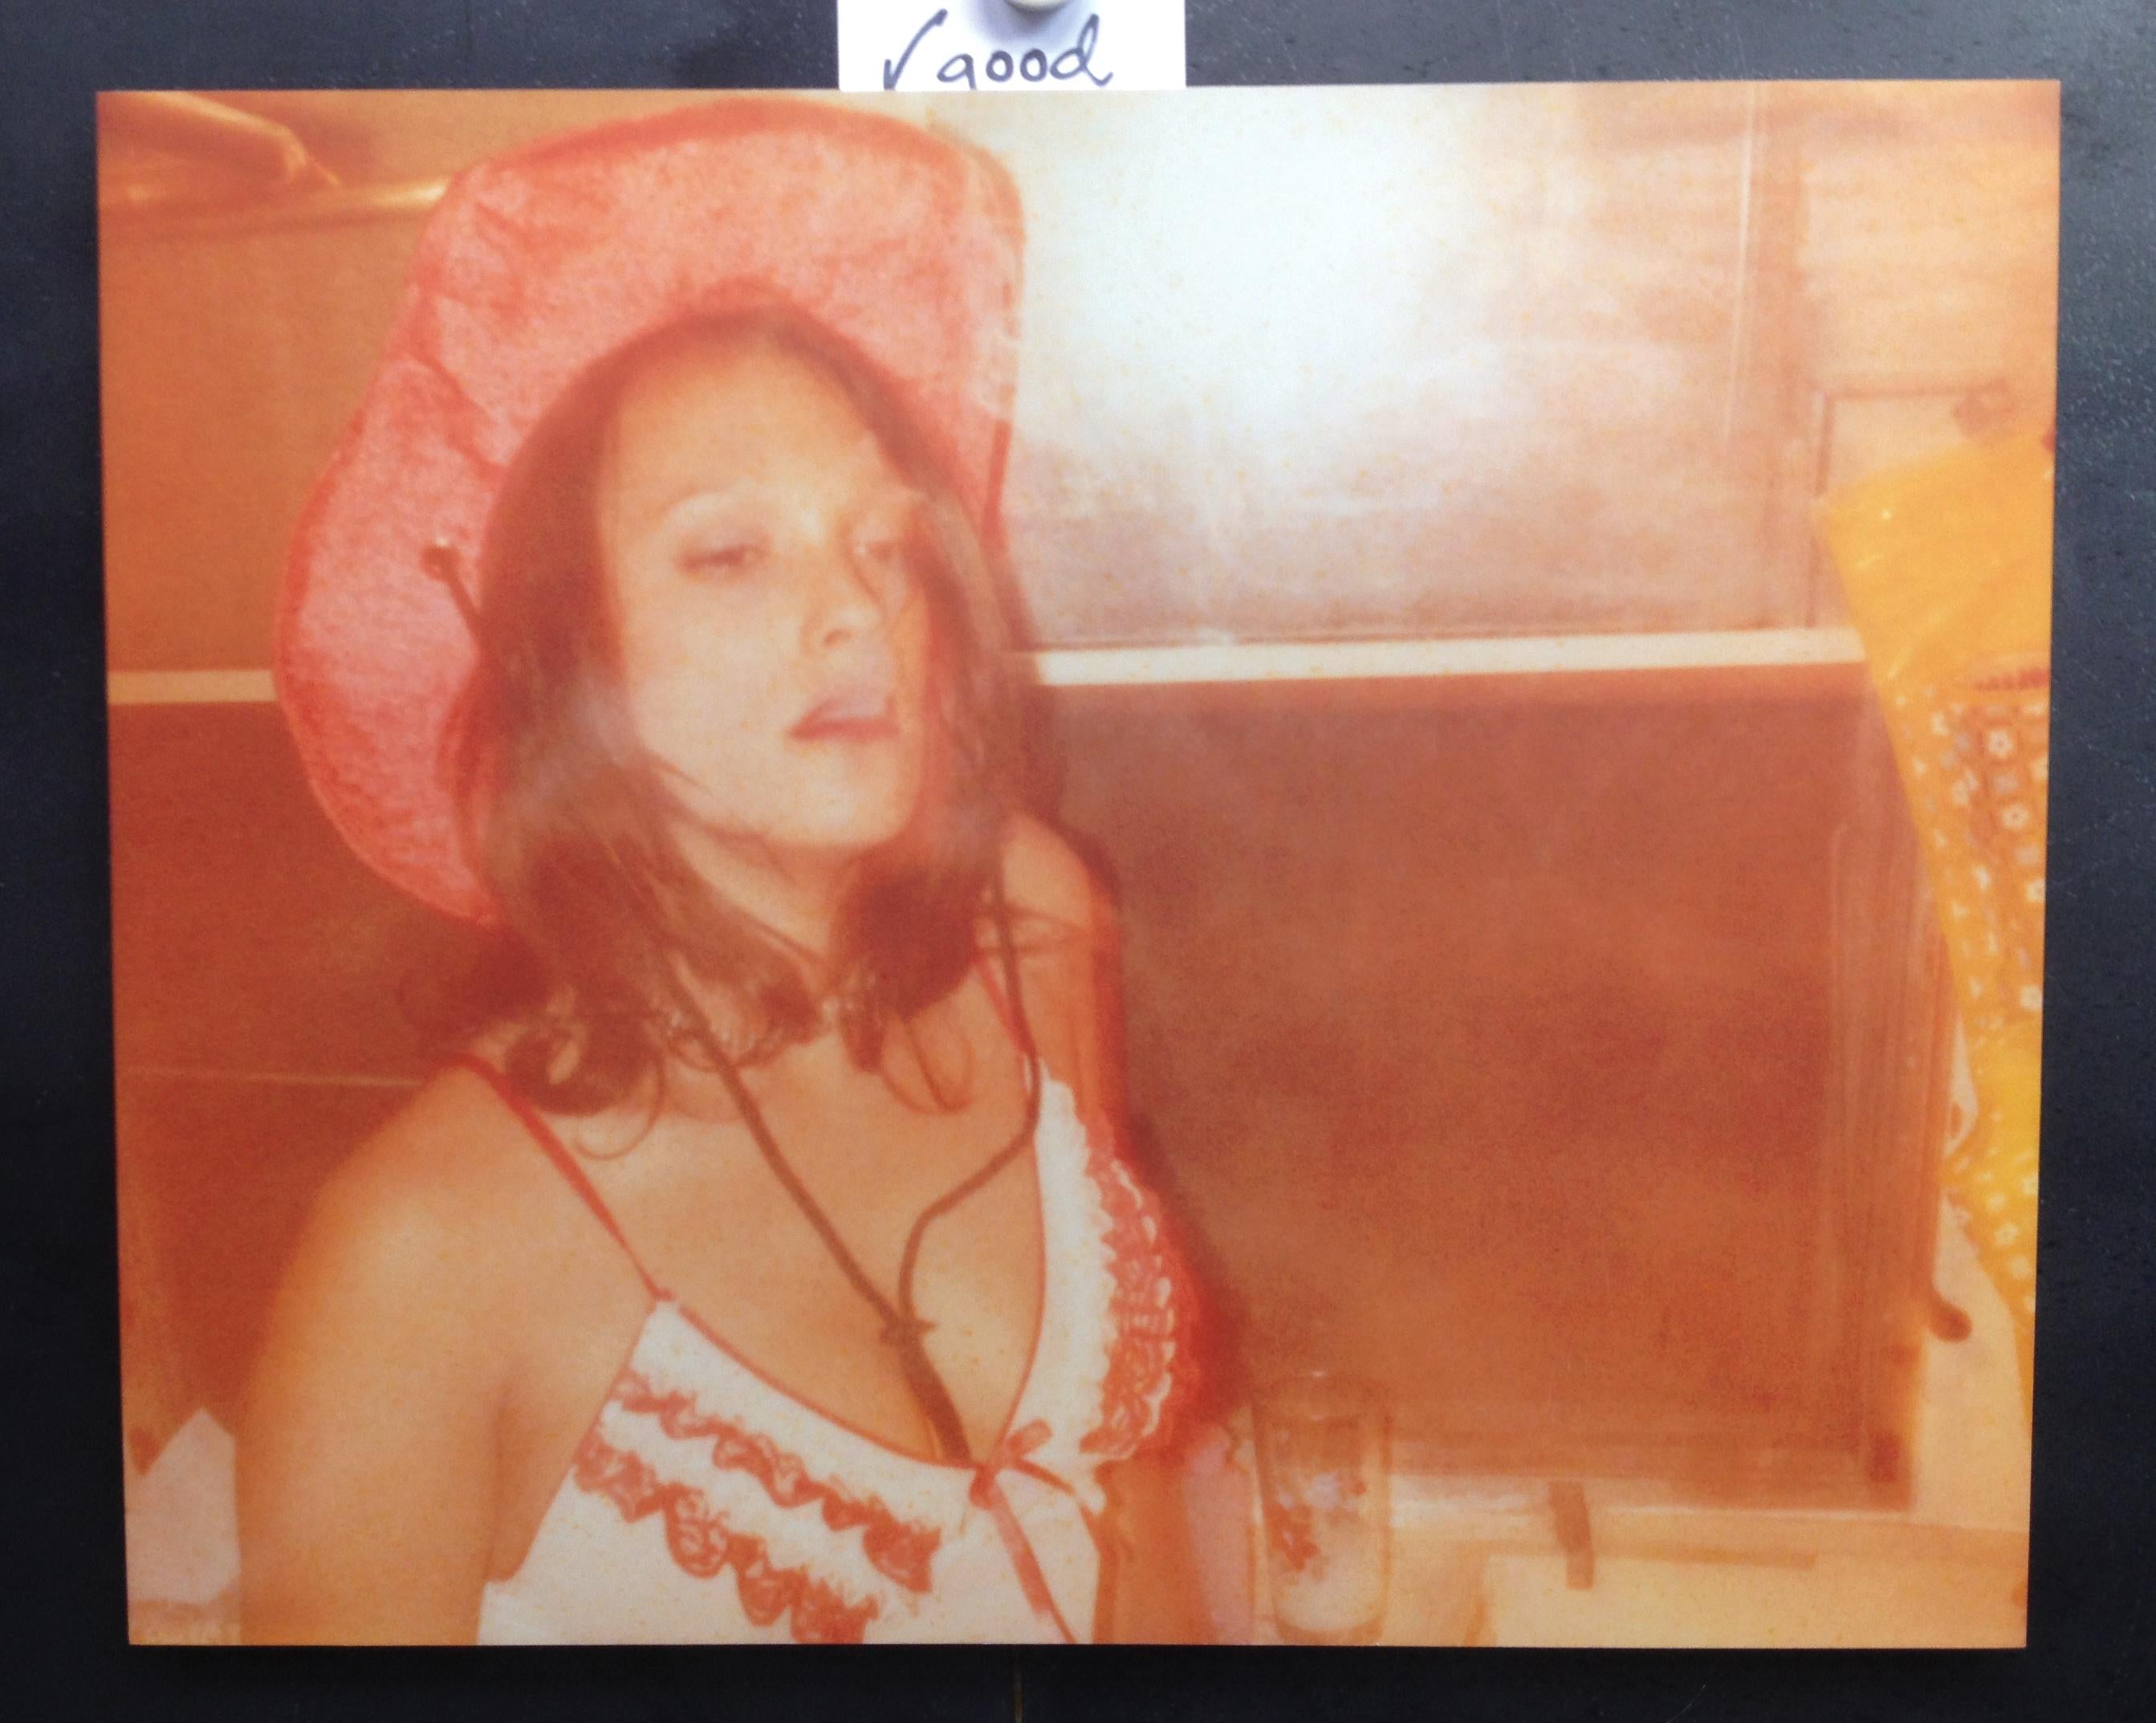 'Les fumeurs de Margarita dans la salle de bains'  Polaroid (La mort ne fait pas partie de nous) - Photograph de Stefanie Schneider